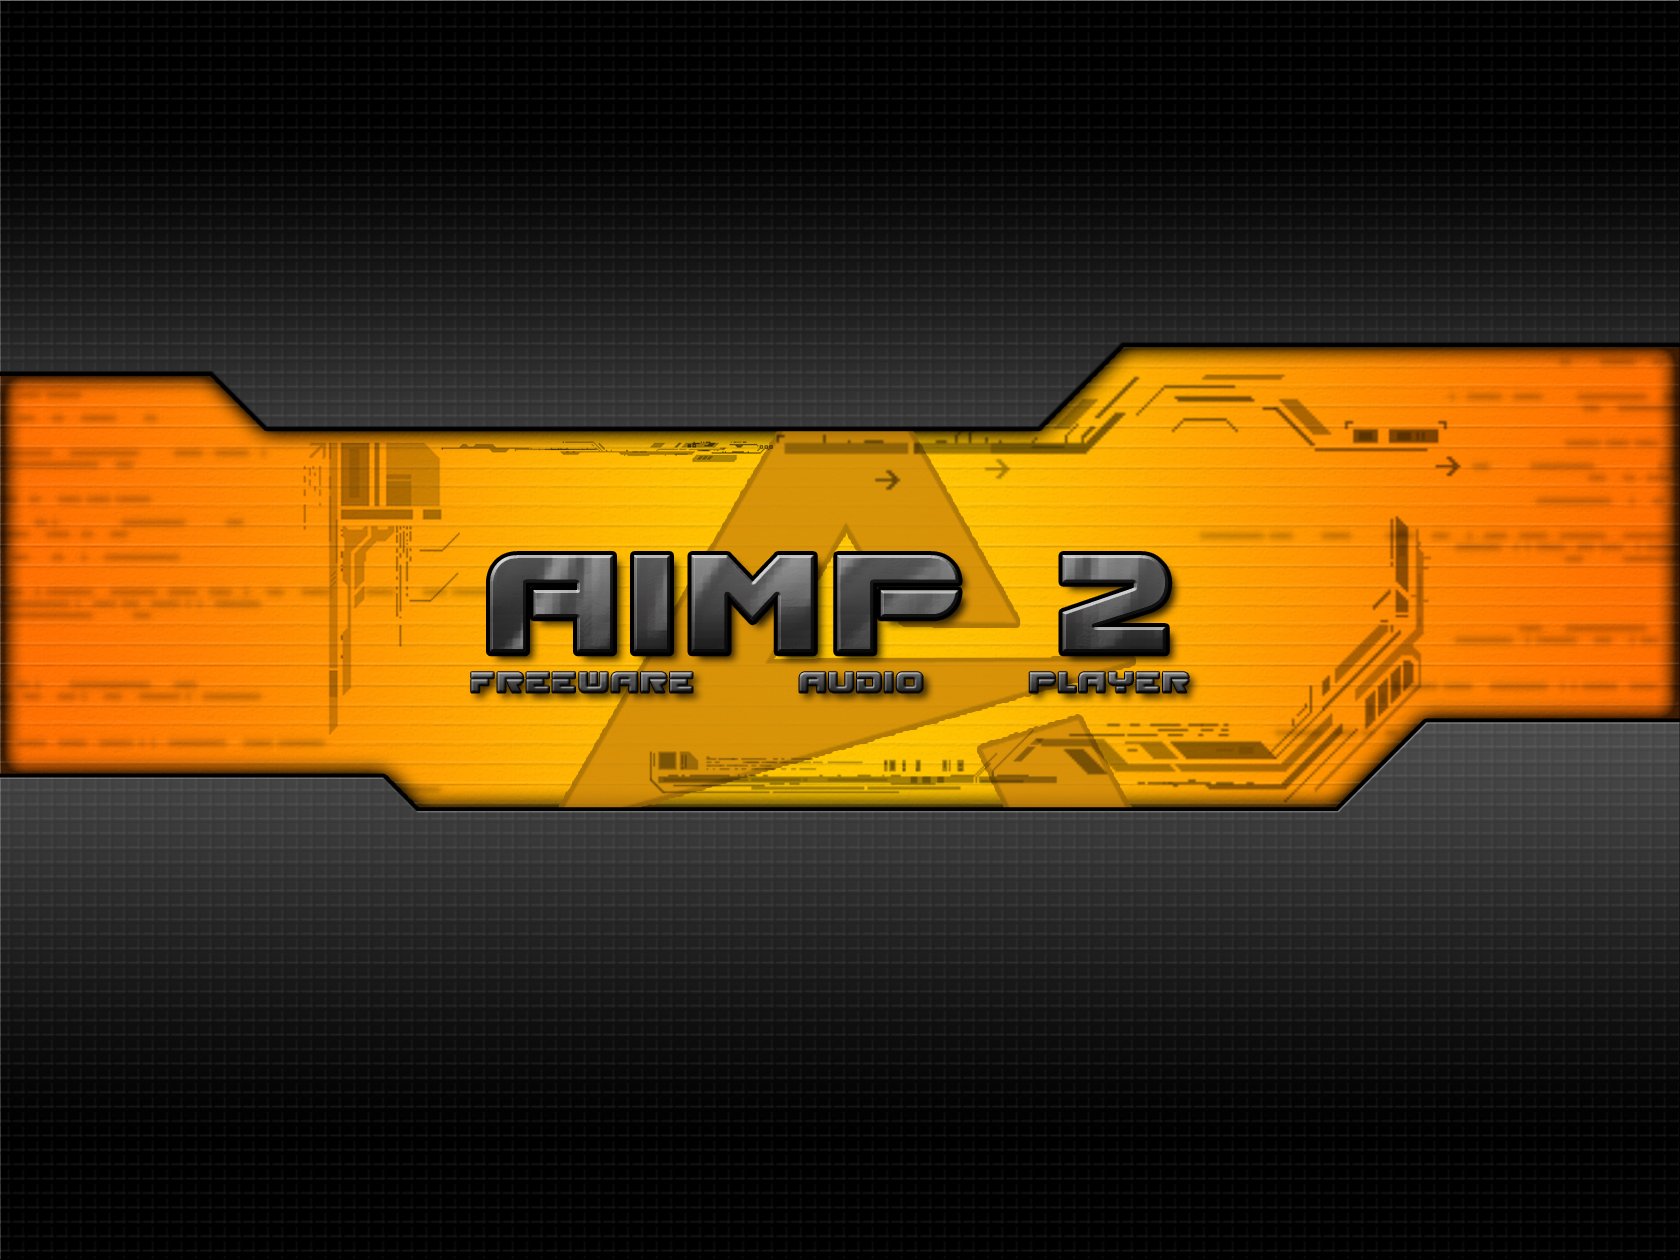 Aimp2